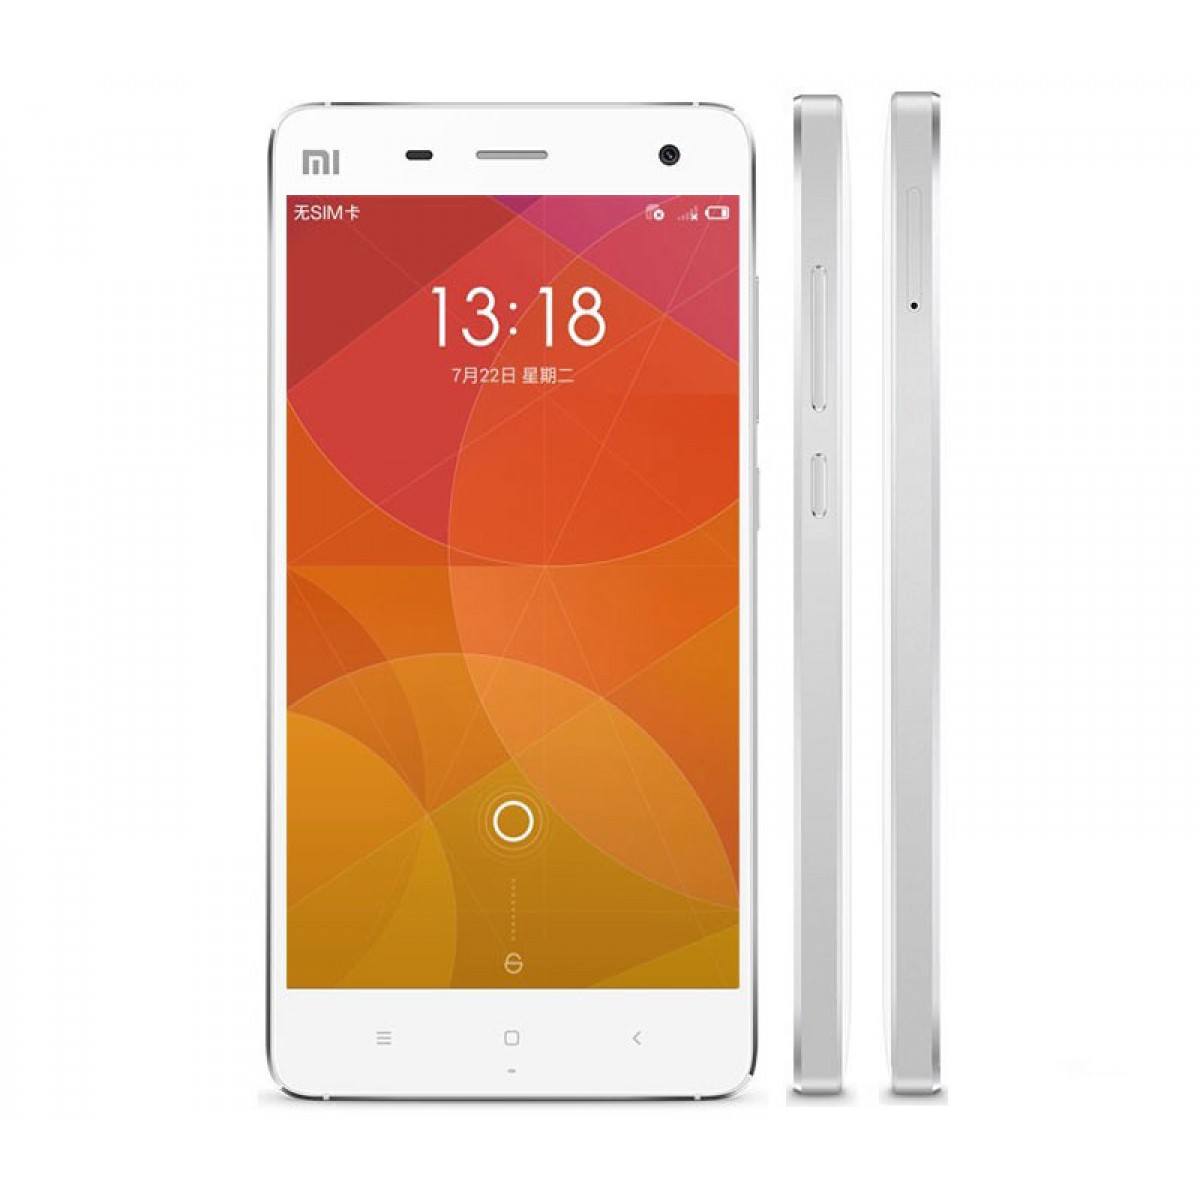 Smartphone Xiaomi Mi4 64GB White